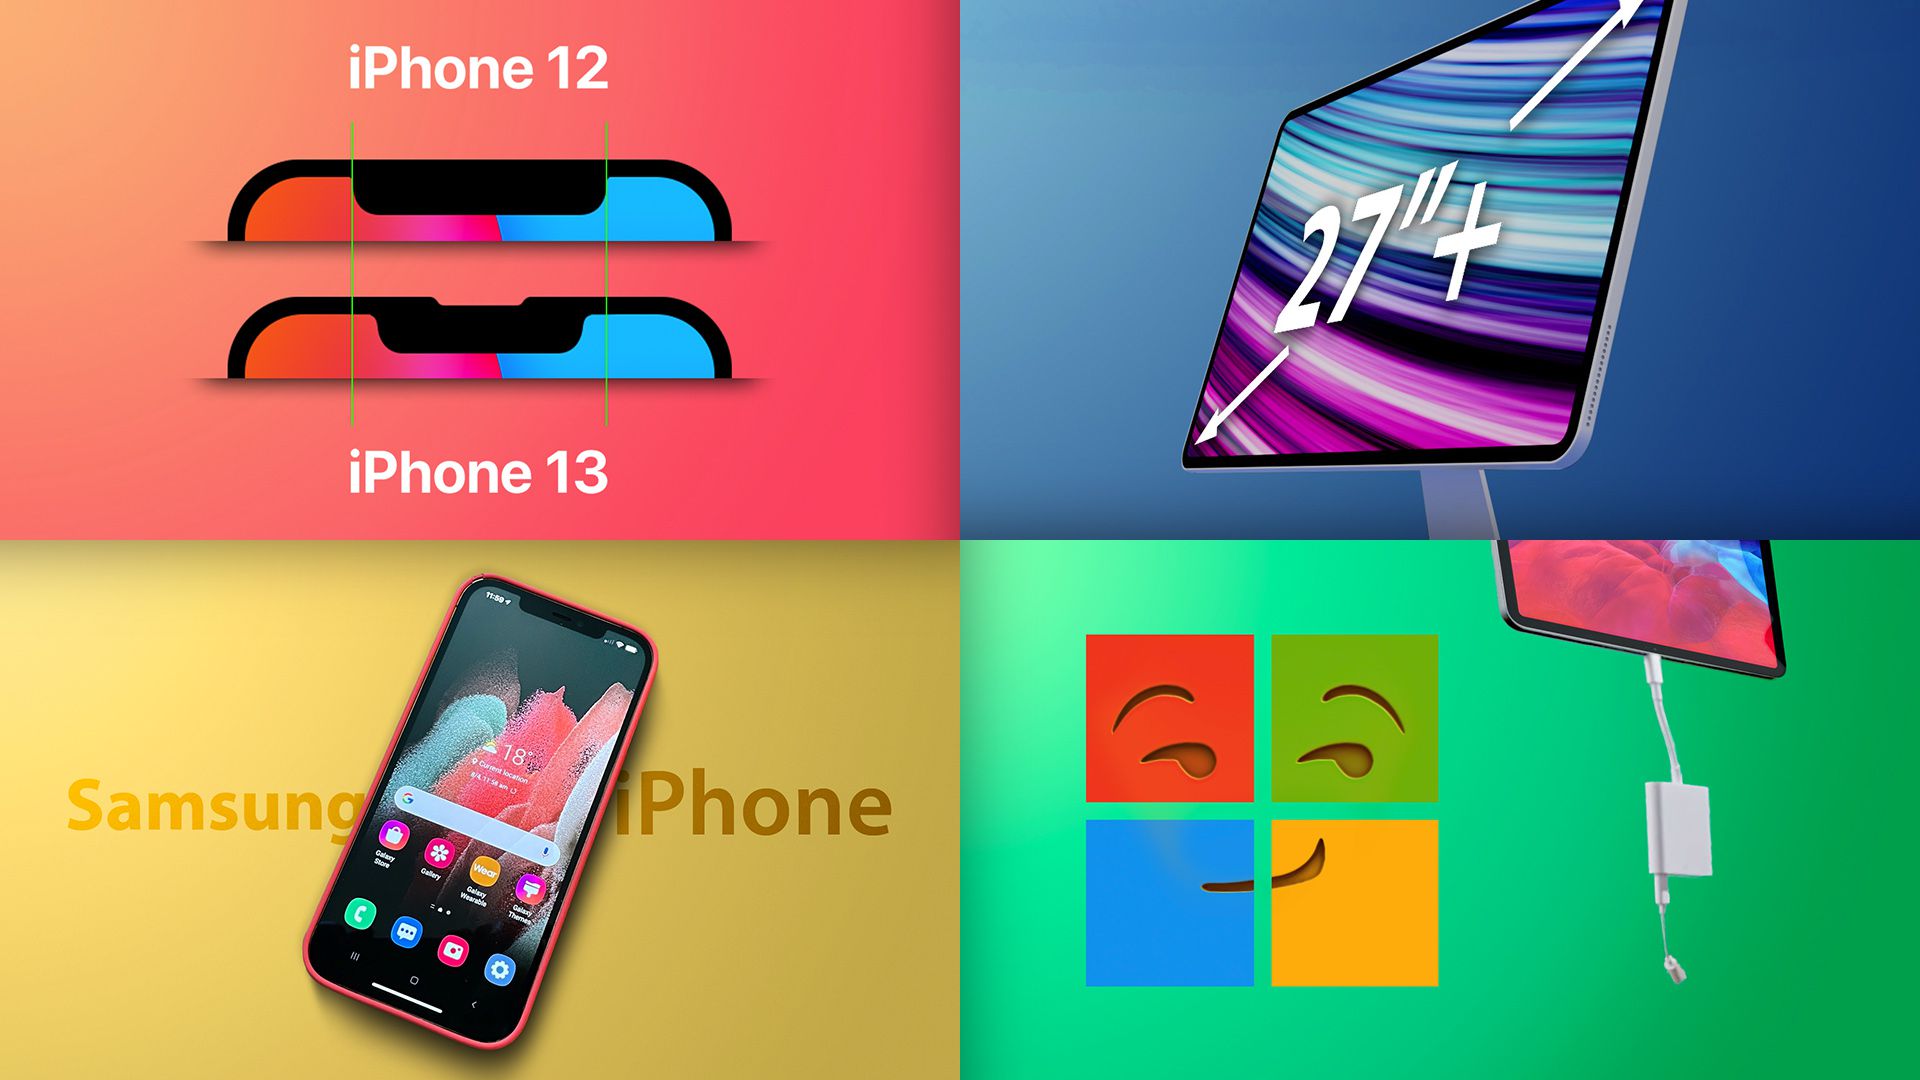 Svarbiausi dalykai: „Find my expand“, „iPhone 13 Pro Mockup“, didžiausias „iMac“?